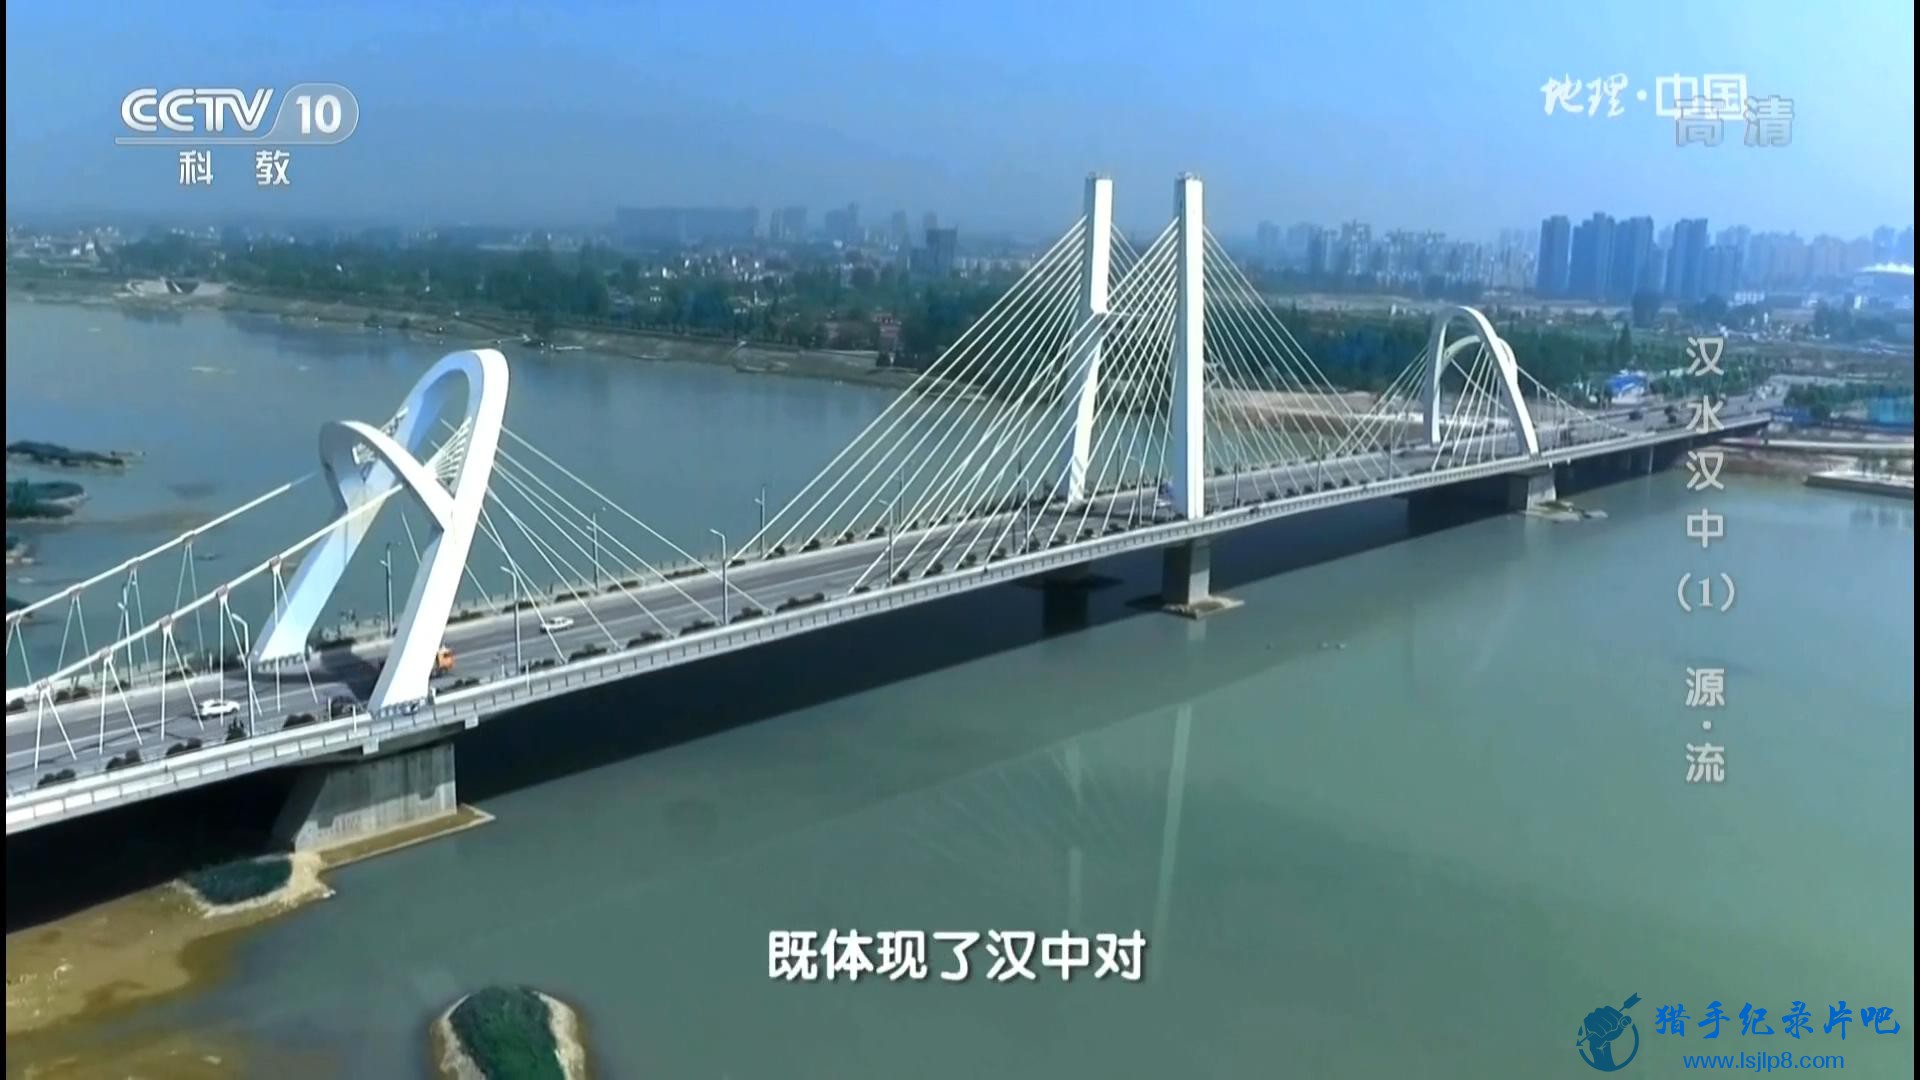 20160718_CCTV-10_Geography.China-Han.River.and.Hanzhong.EP01-jlp_20180220150457.JPG